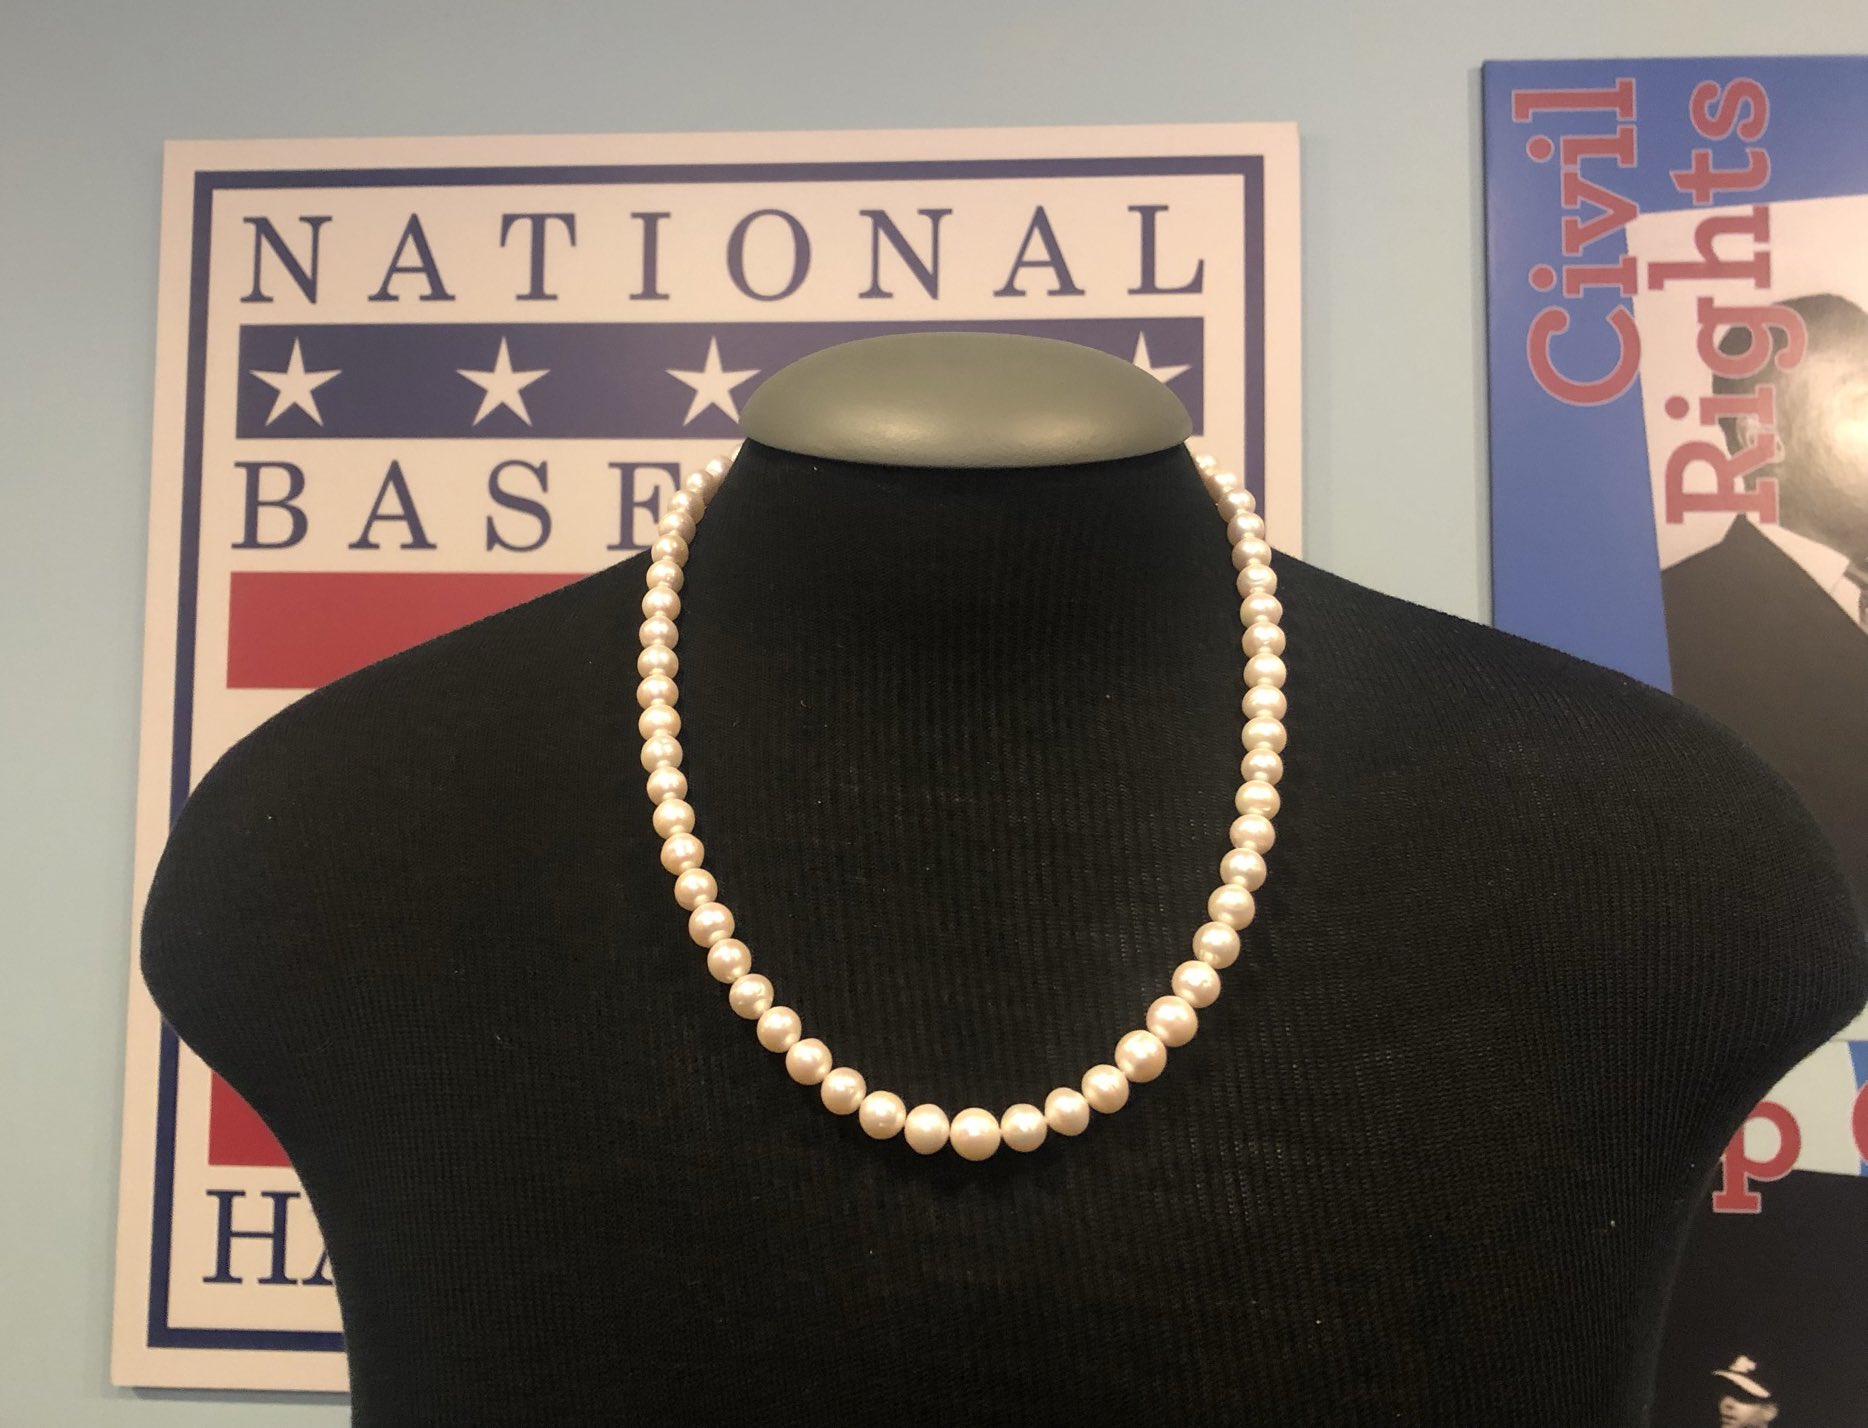 Dan Clark on X: Joc Pederson's pearls, in Cooperstown.